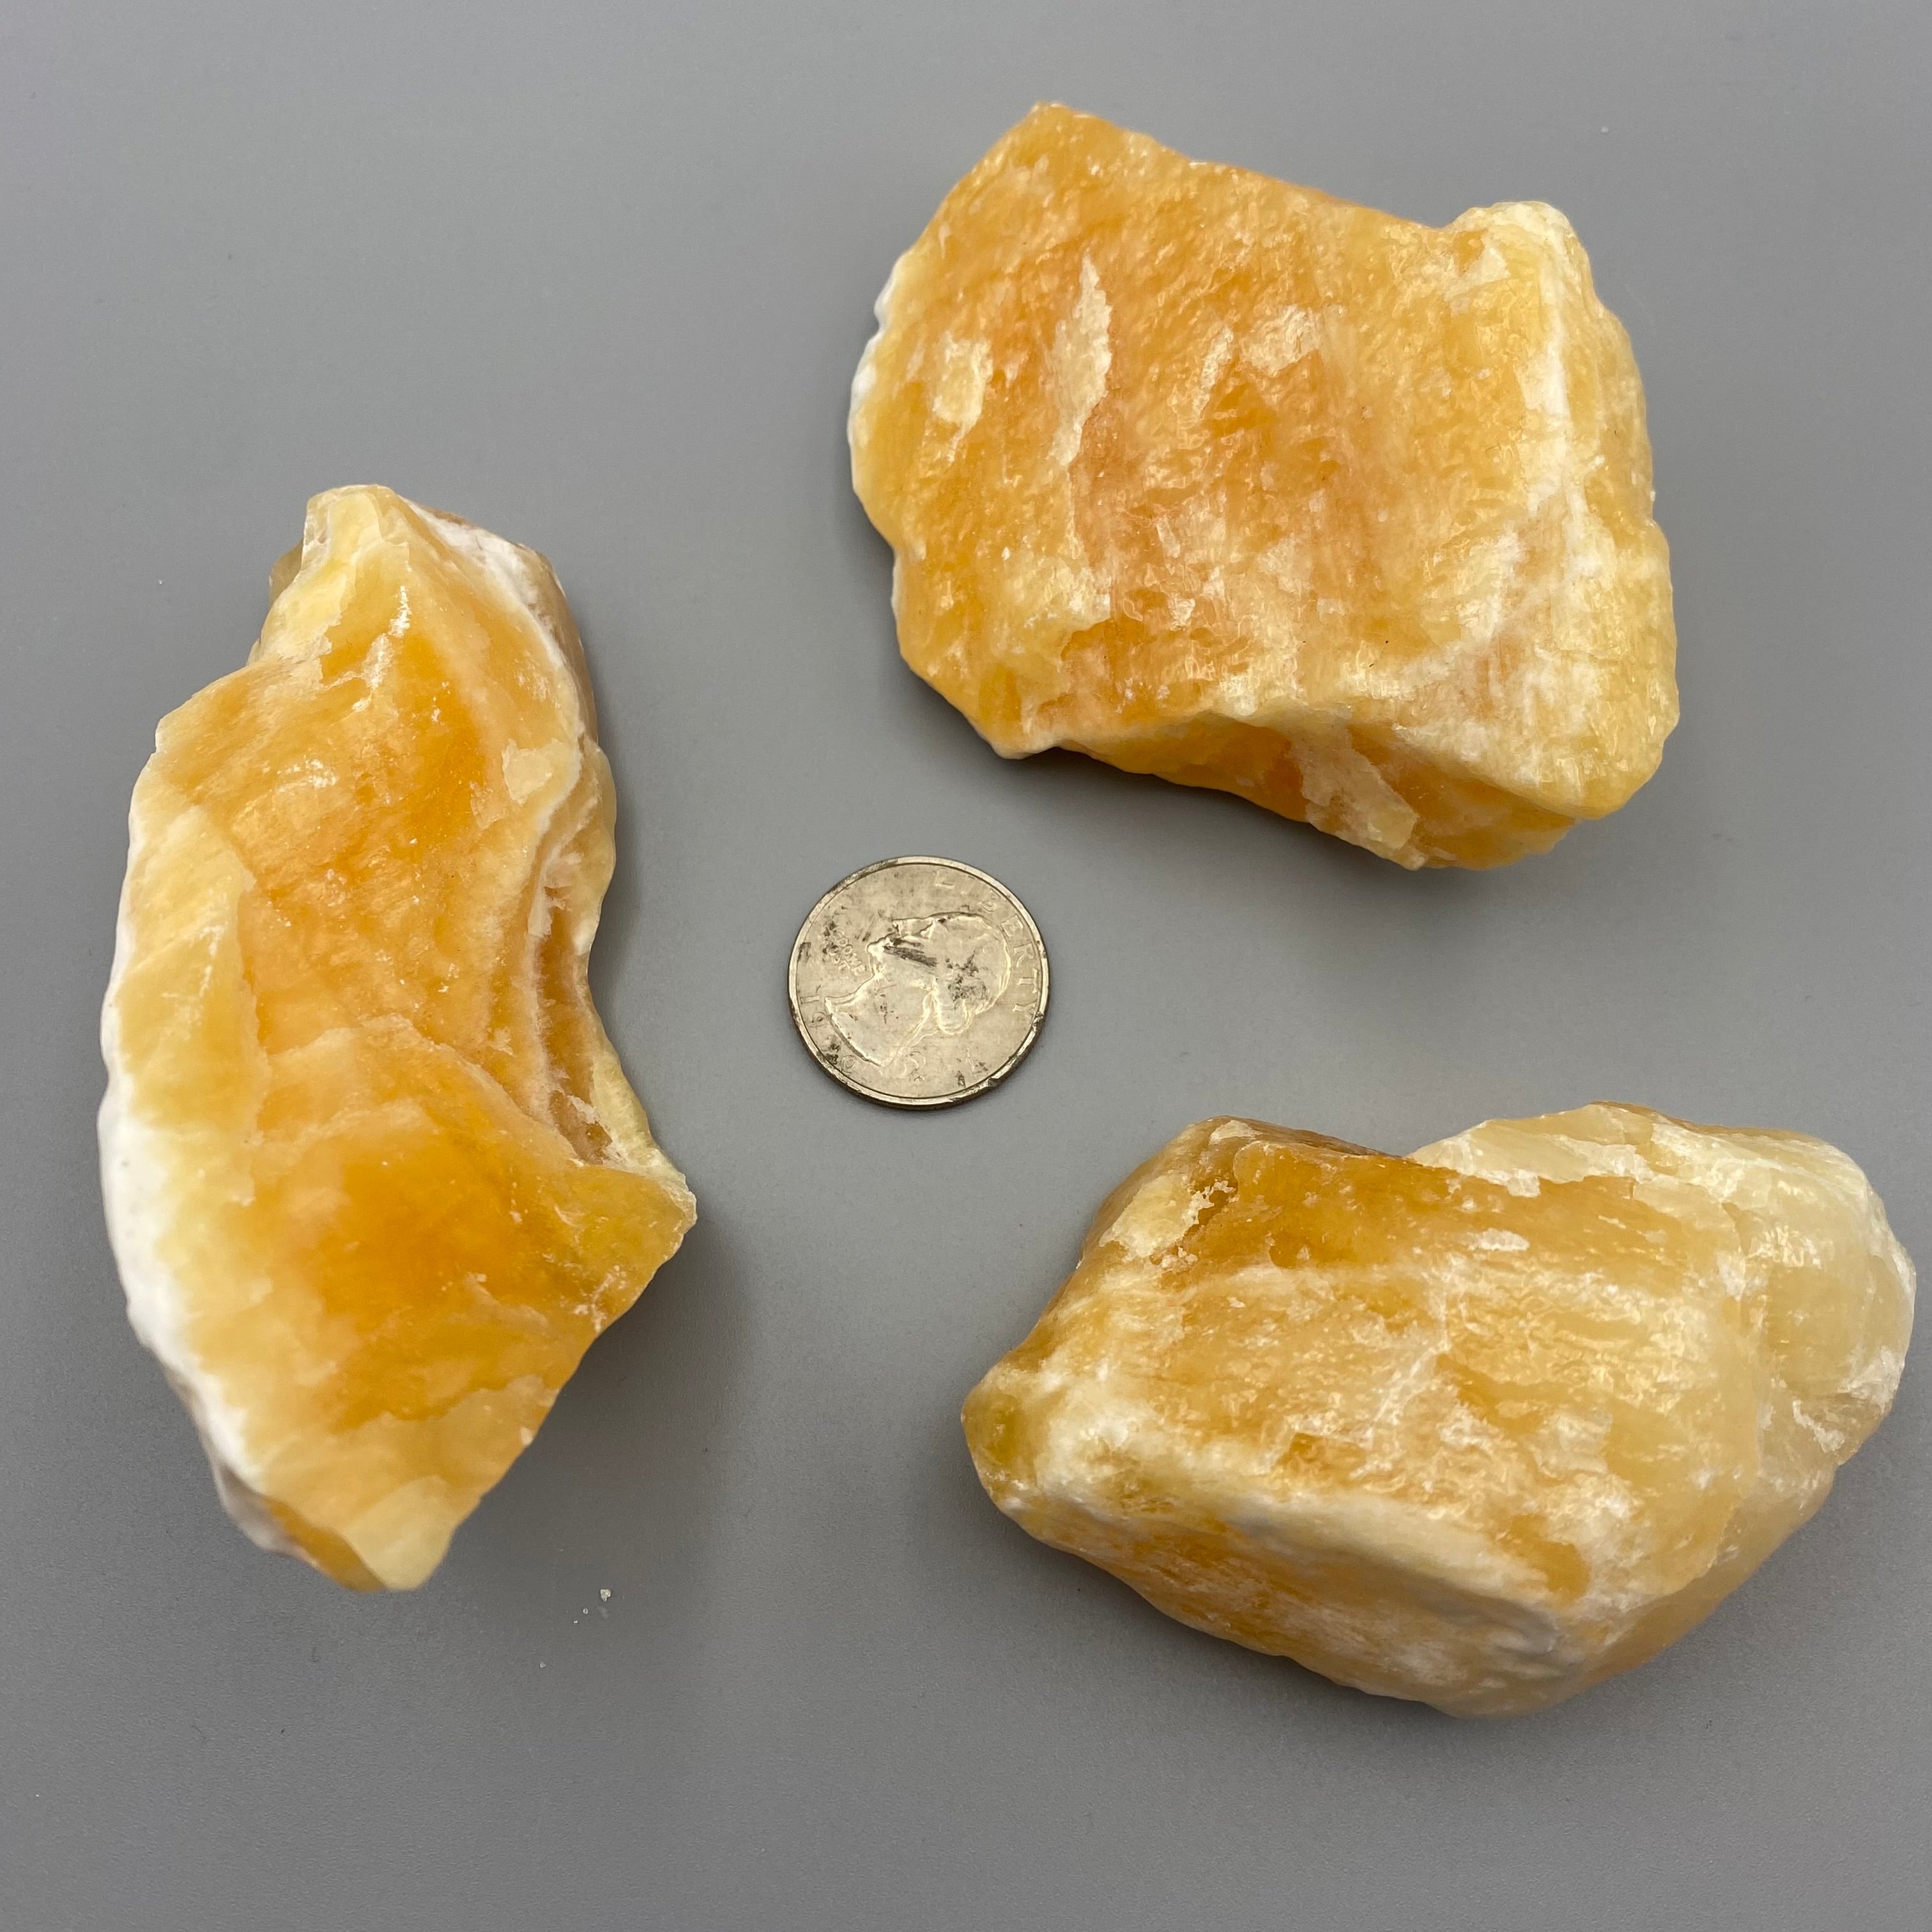 Calcite, Kit of 3